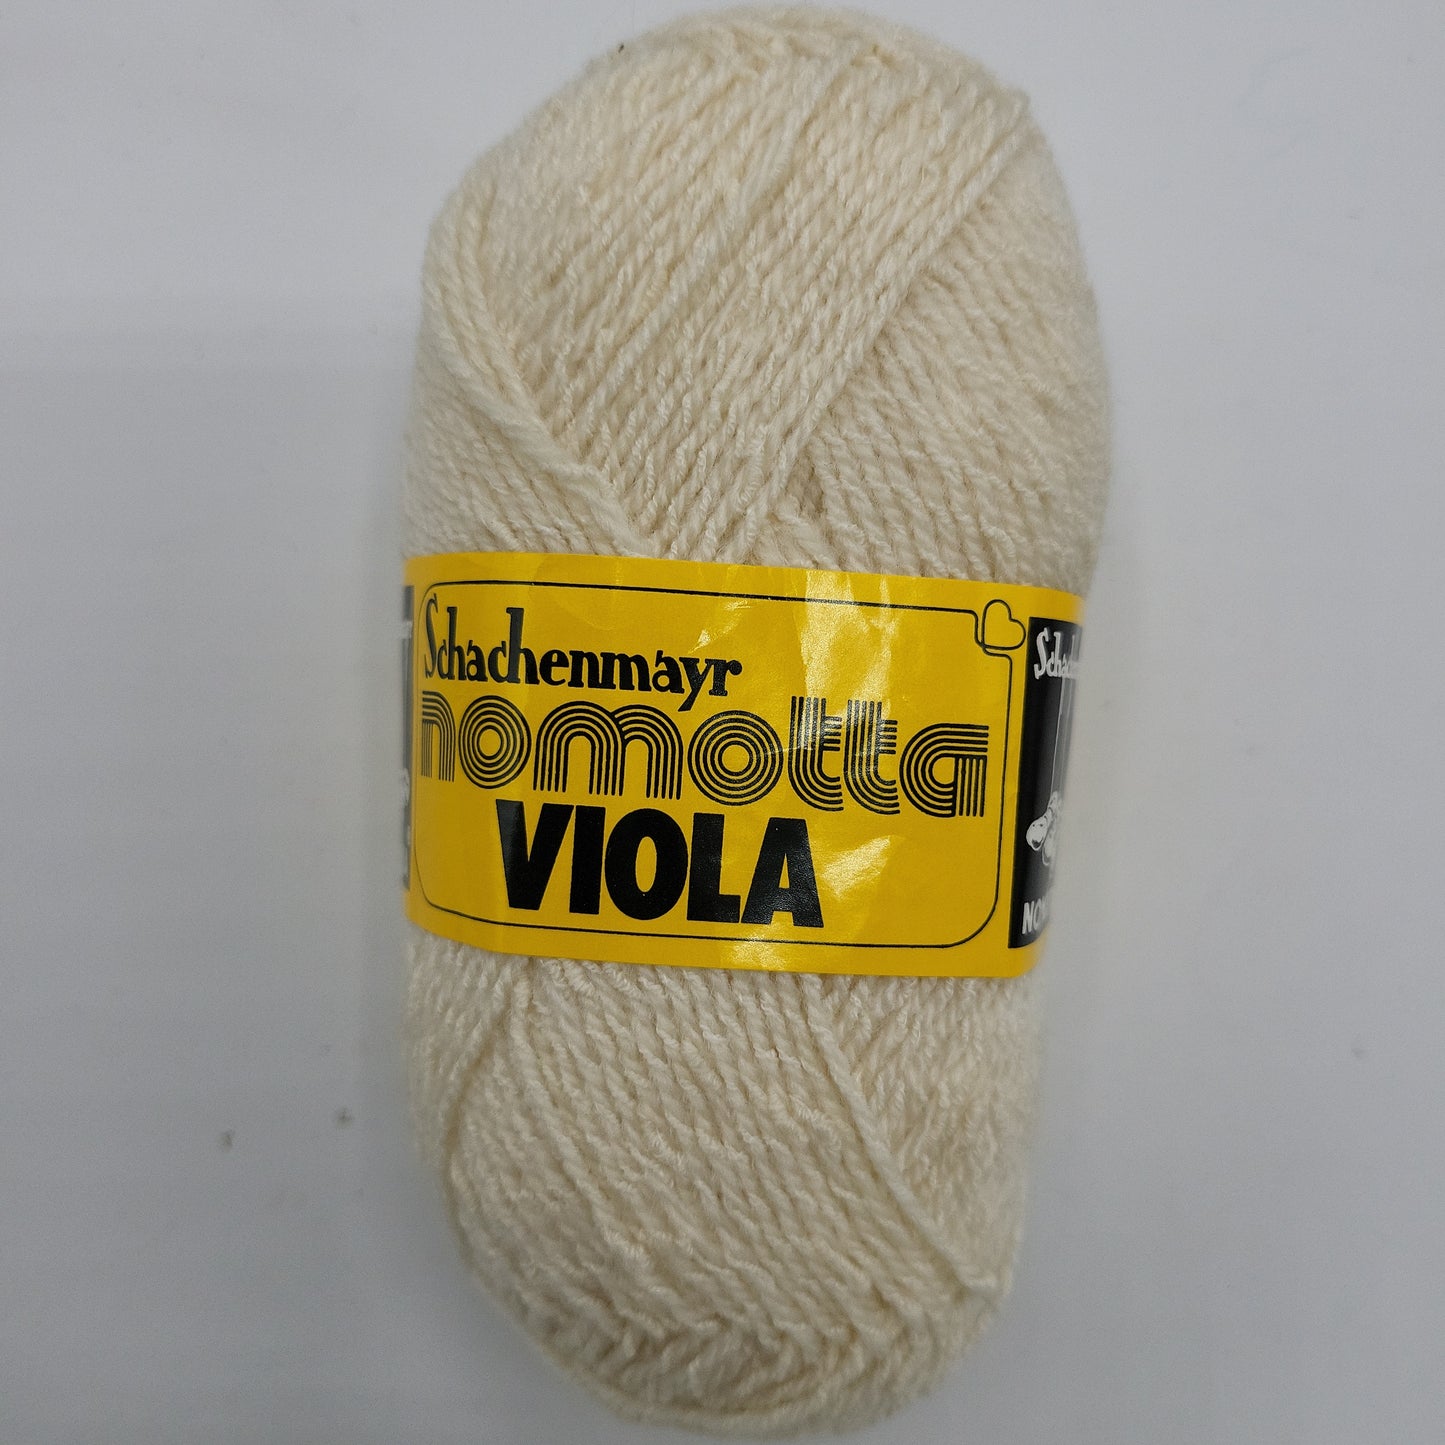 Schachenmayr Nomotta Viola 50g Polyacryl & Baumwolle 145m